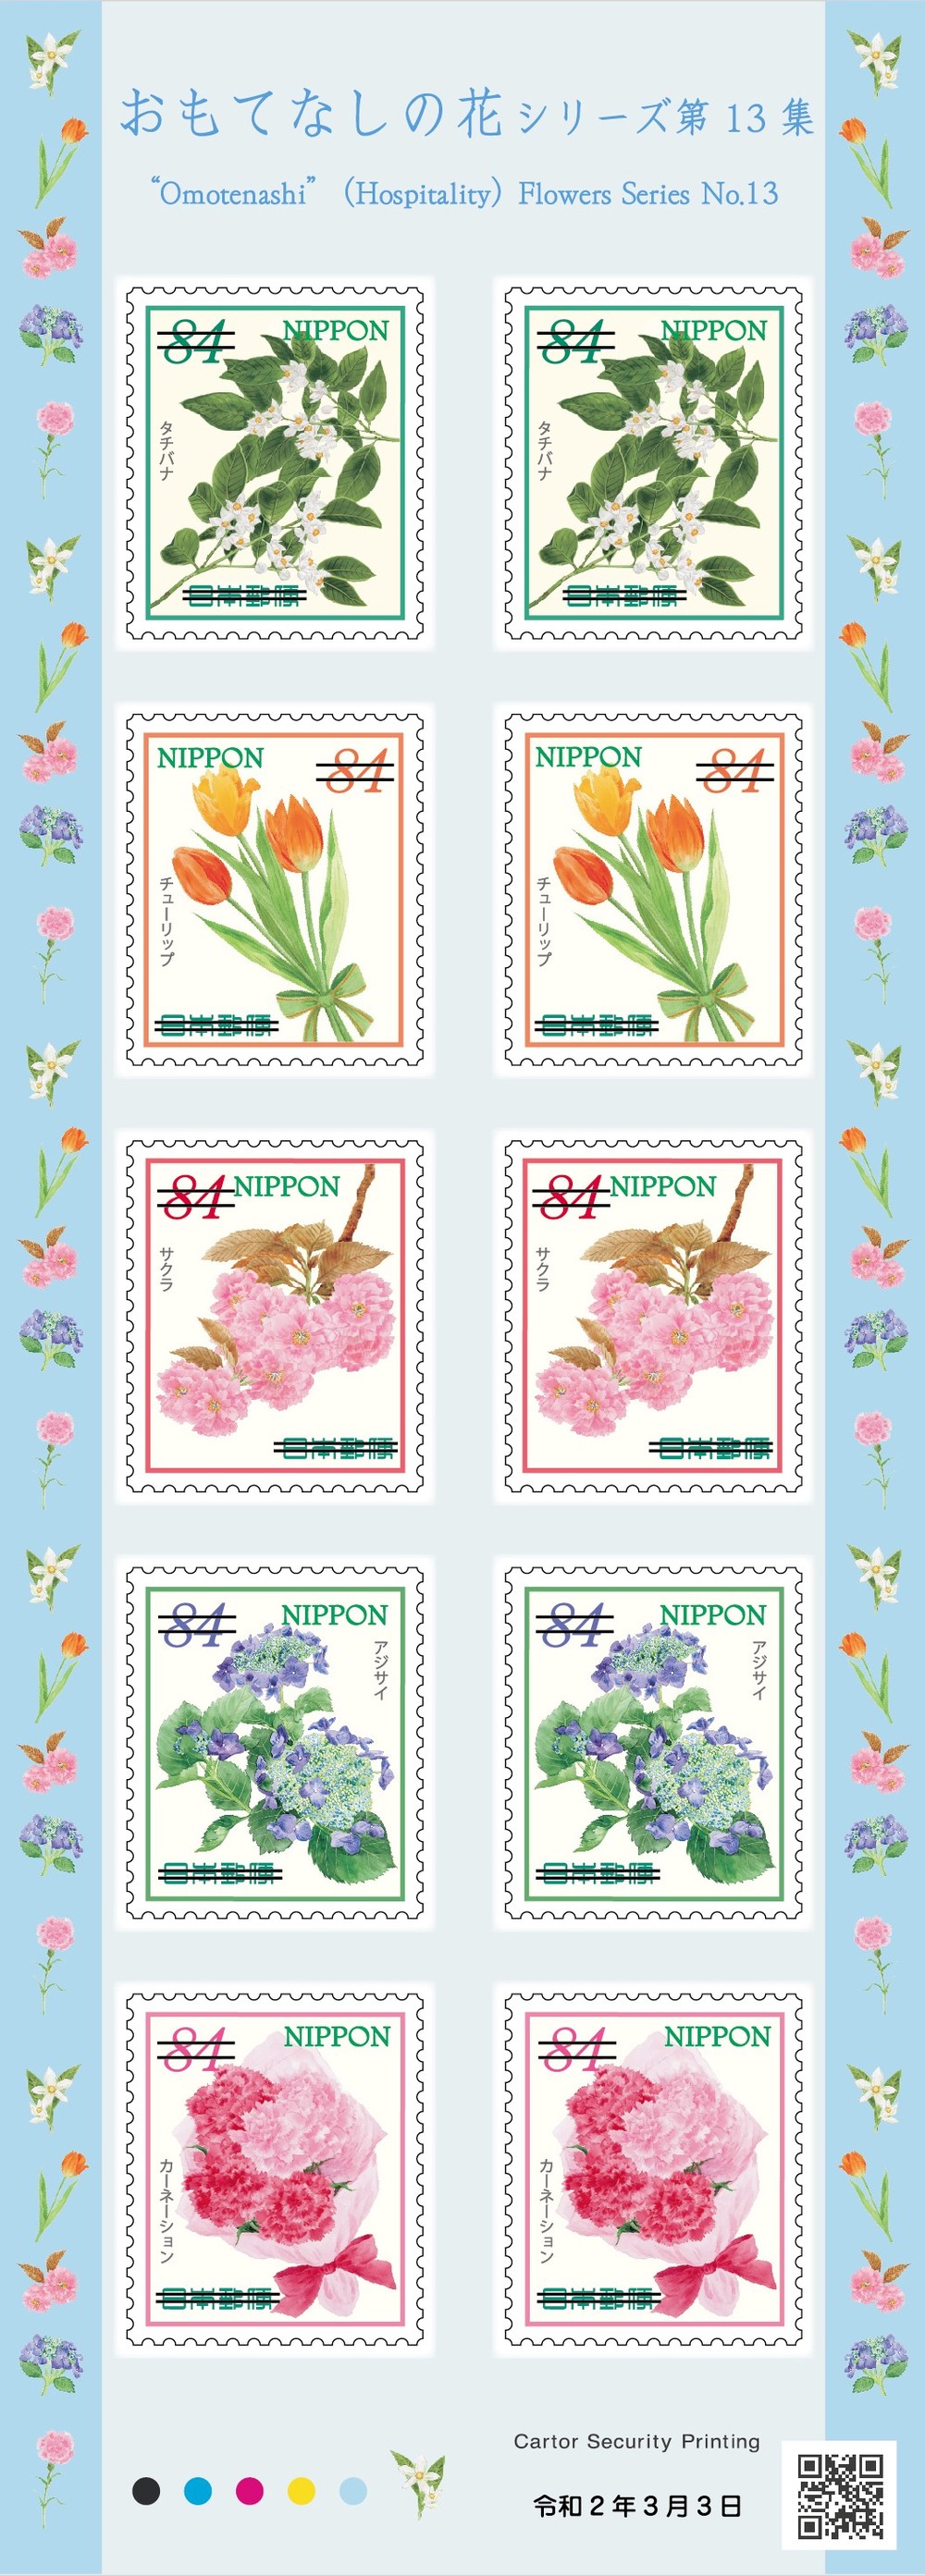 「おもてなしの花」切手のシート（ニュースリリースから）